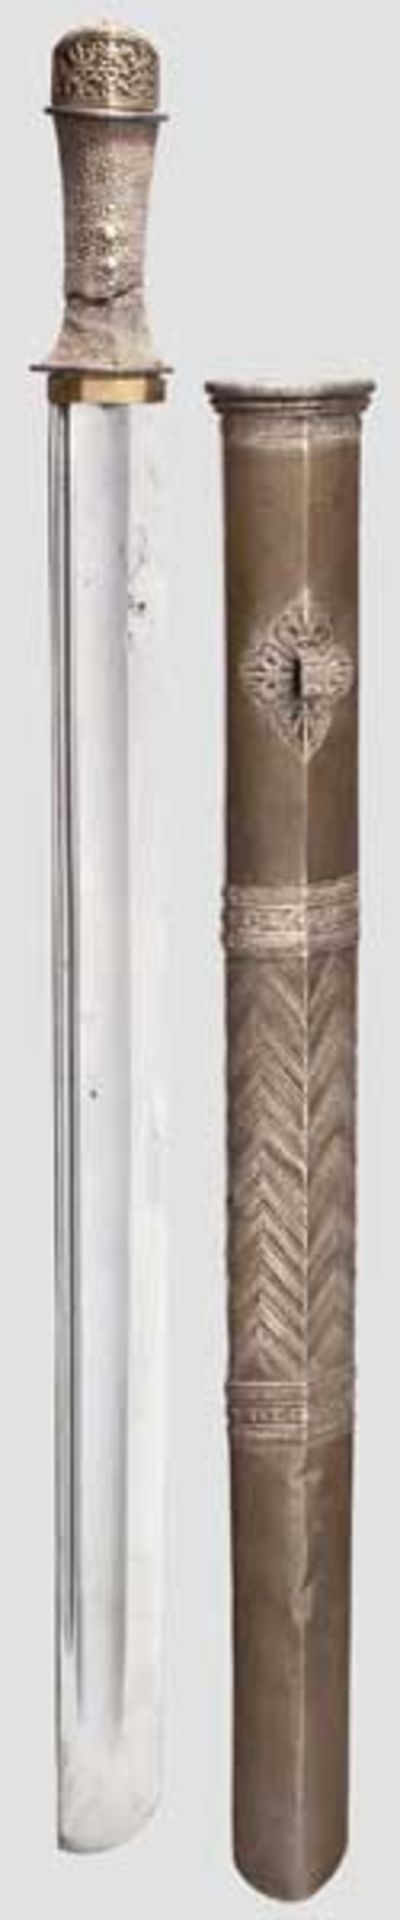 Schwert, Tibet, 19. Jhdt. Ungewöhnlich breite und schwere, beidseitig doppelt gekehlte